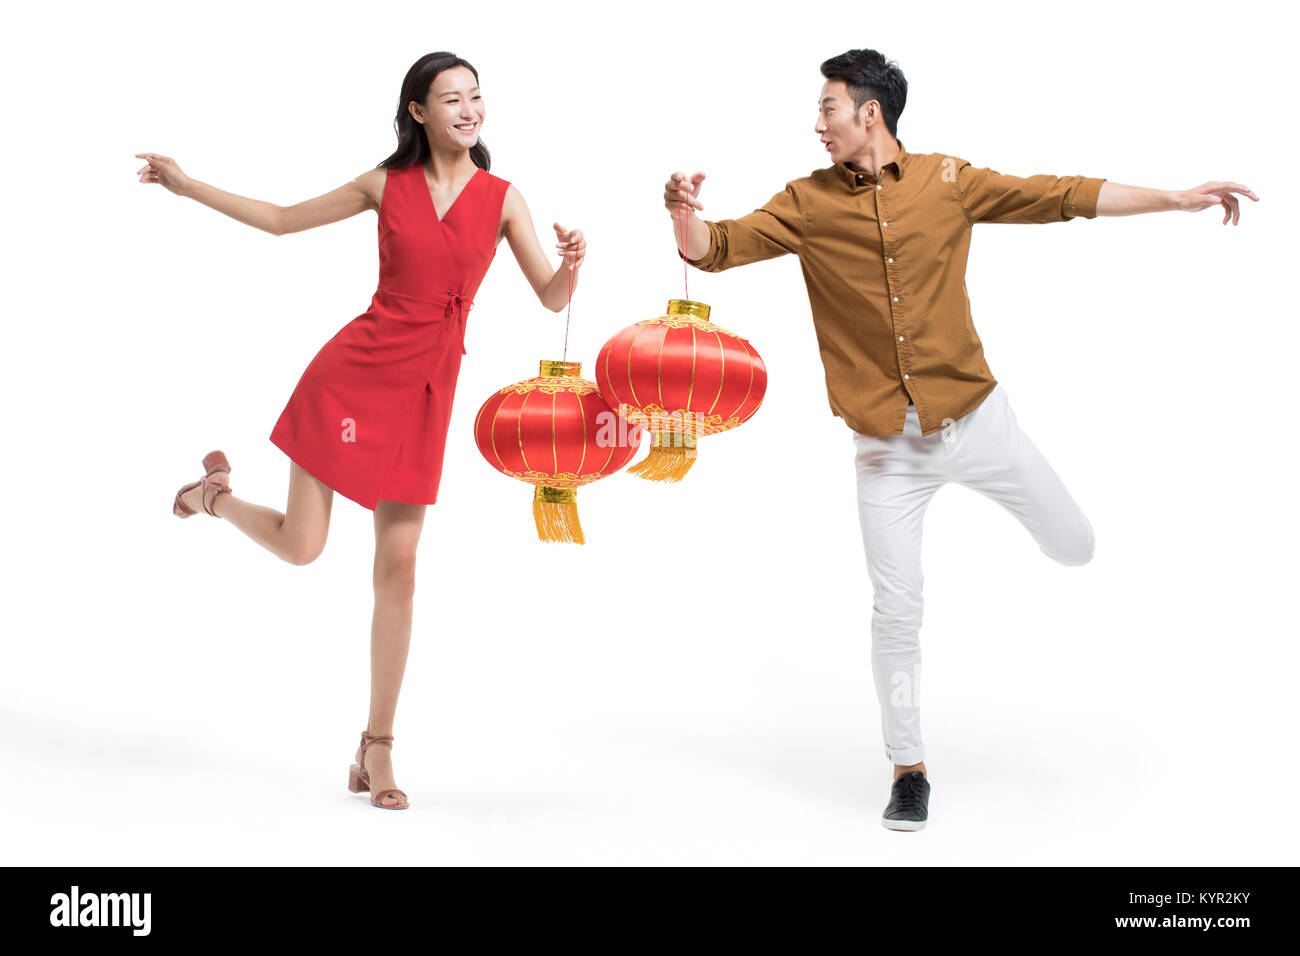 Cheerful young couples célébrant le nouvel an chinois avec des lanternes traditionnelles Banque D'Images